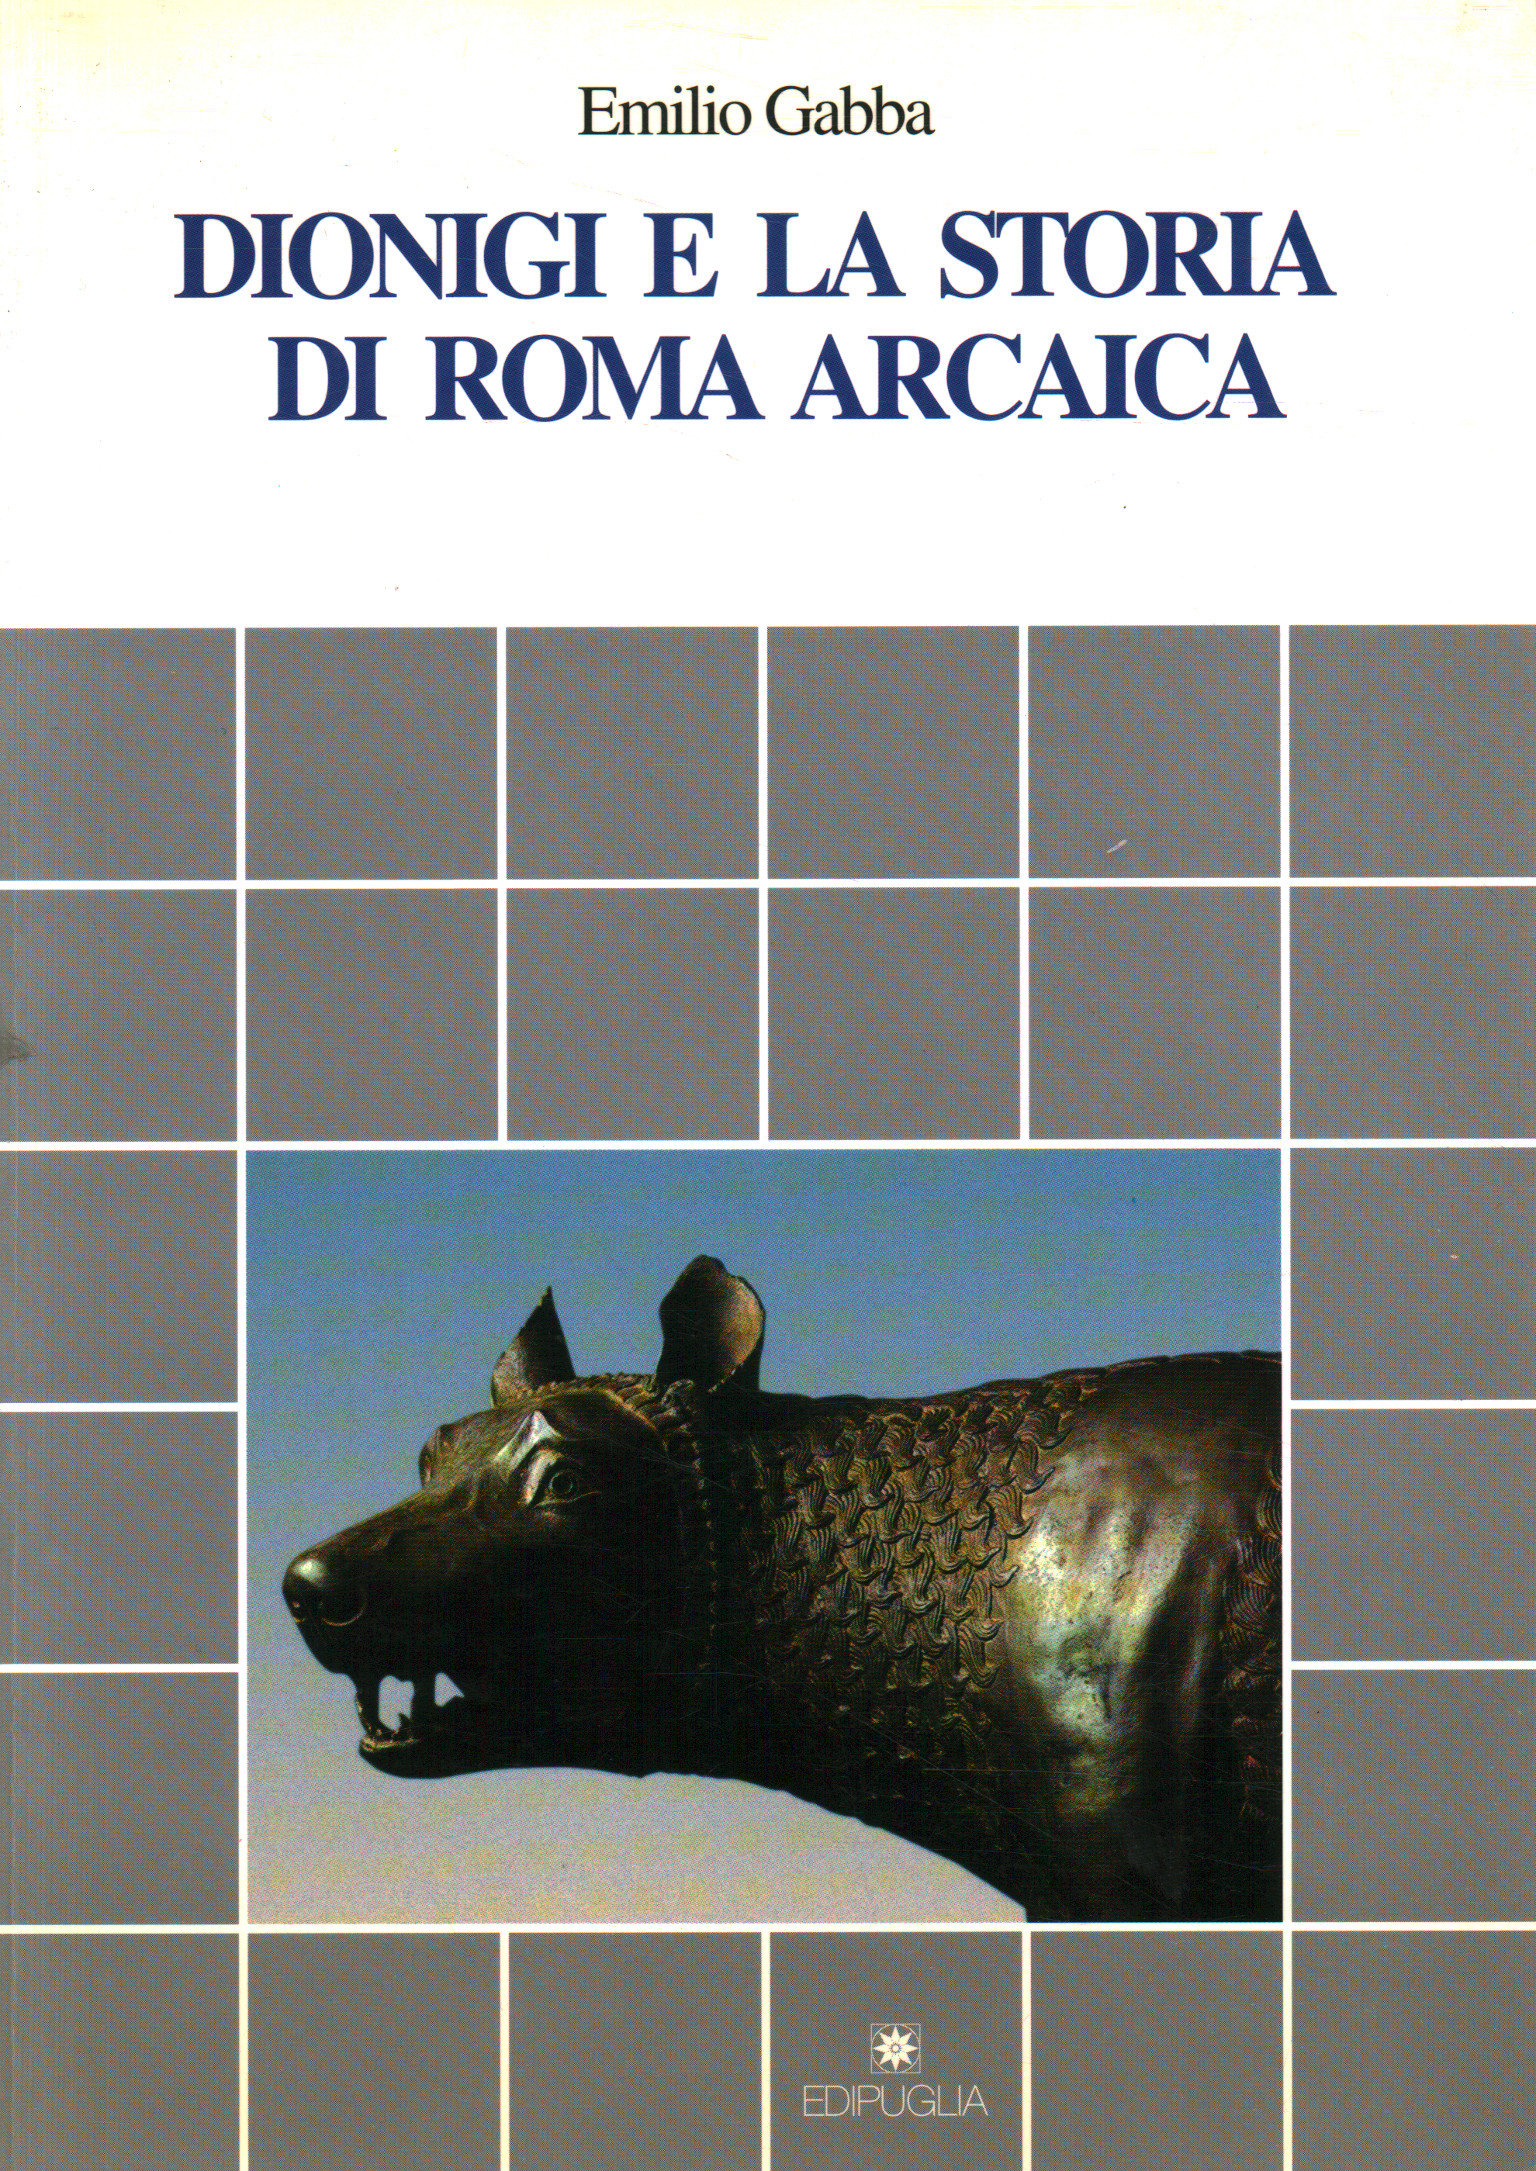 Dionigi e la storia di Roma arcaica